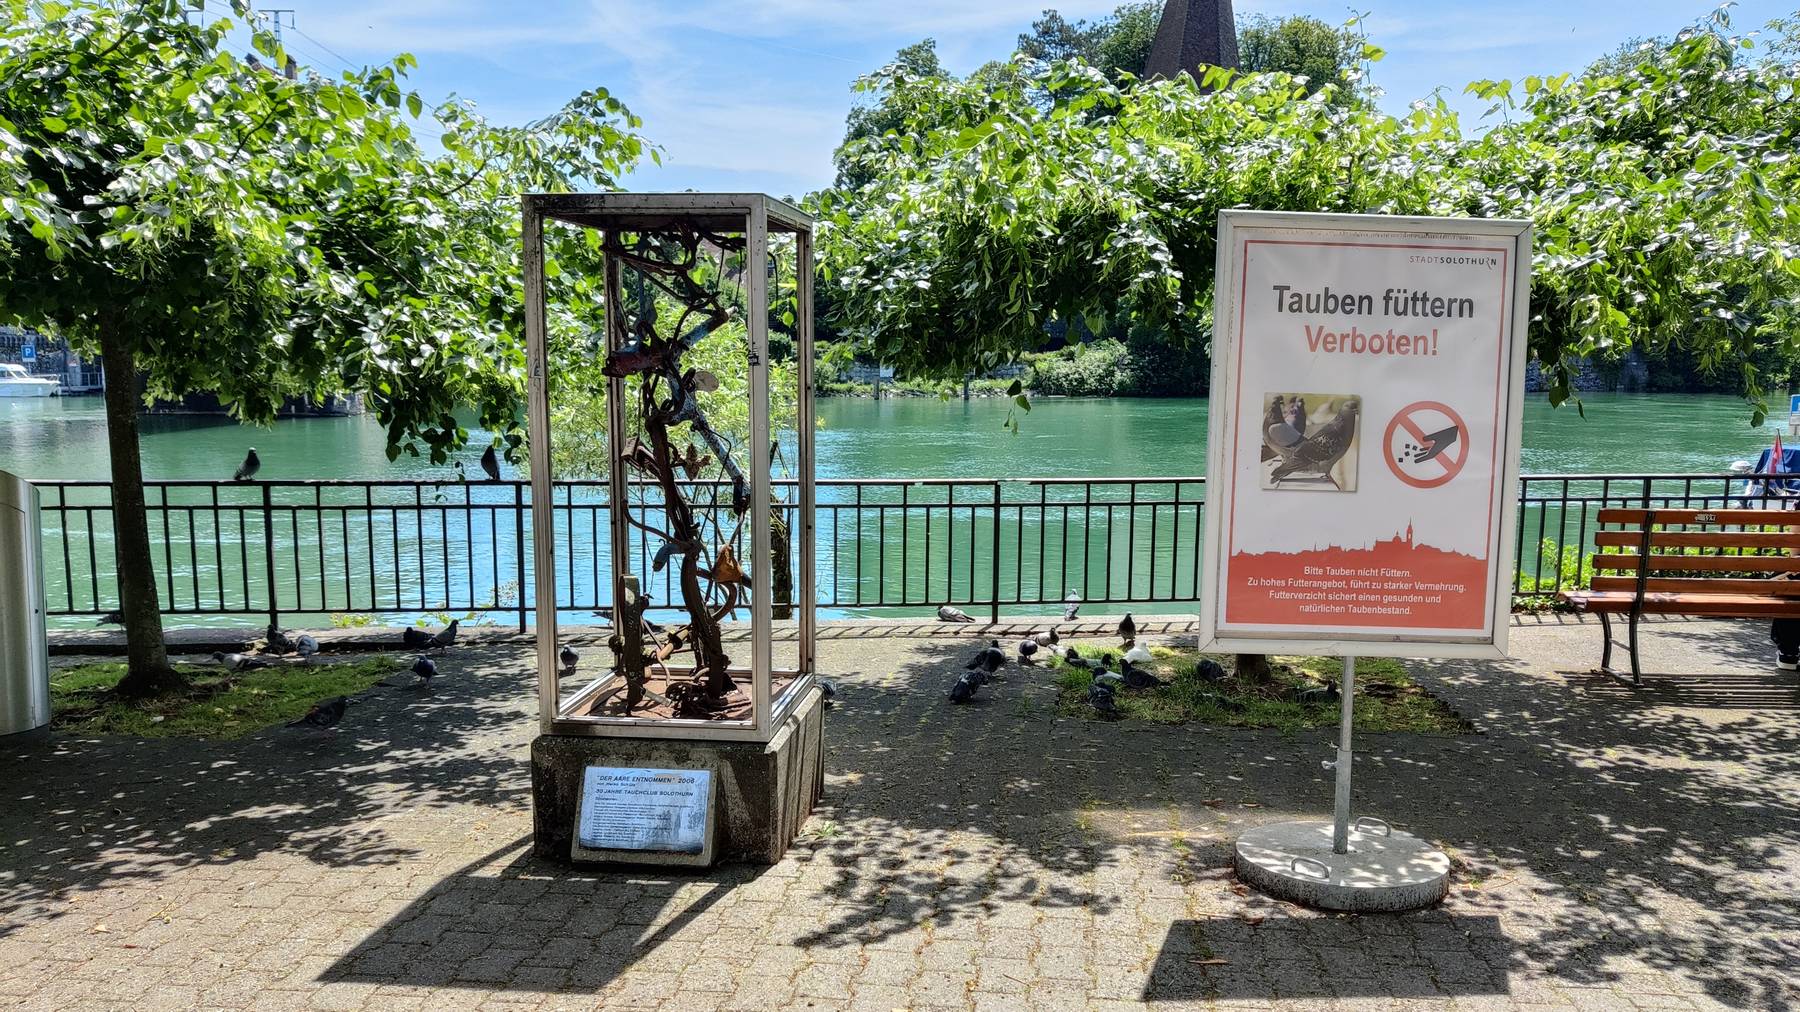 Tauben füttern Solothurn